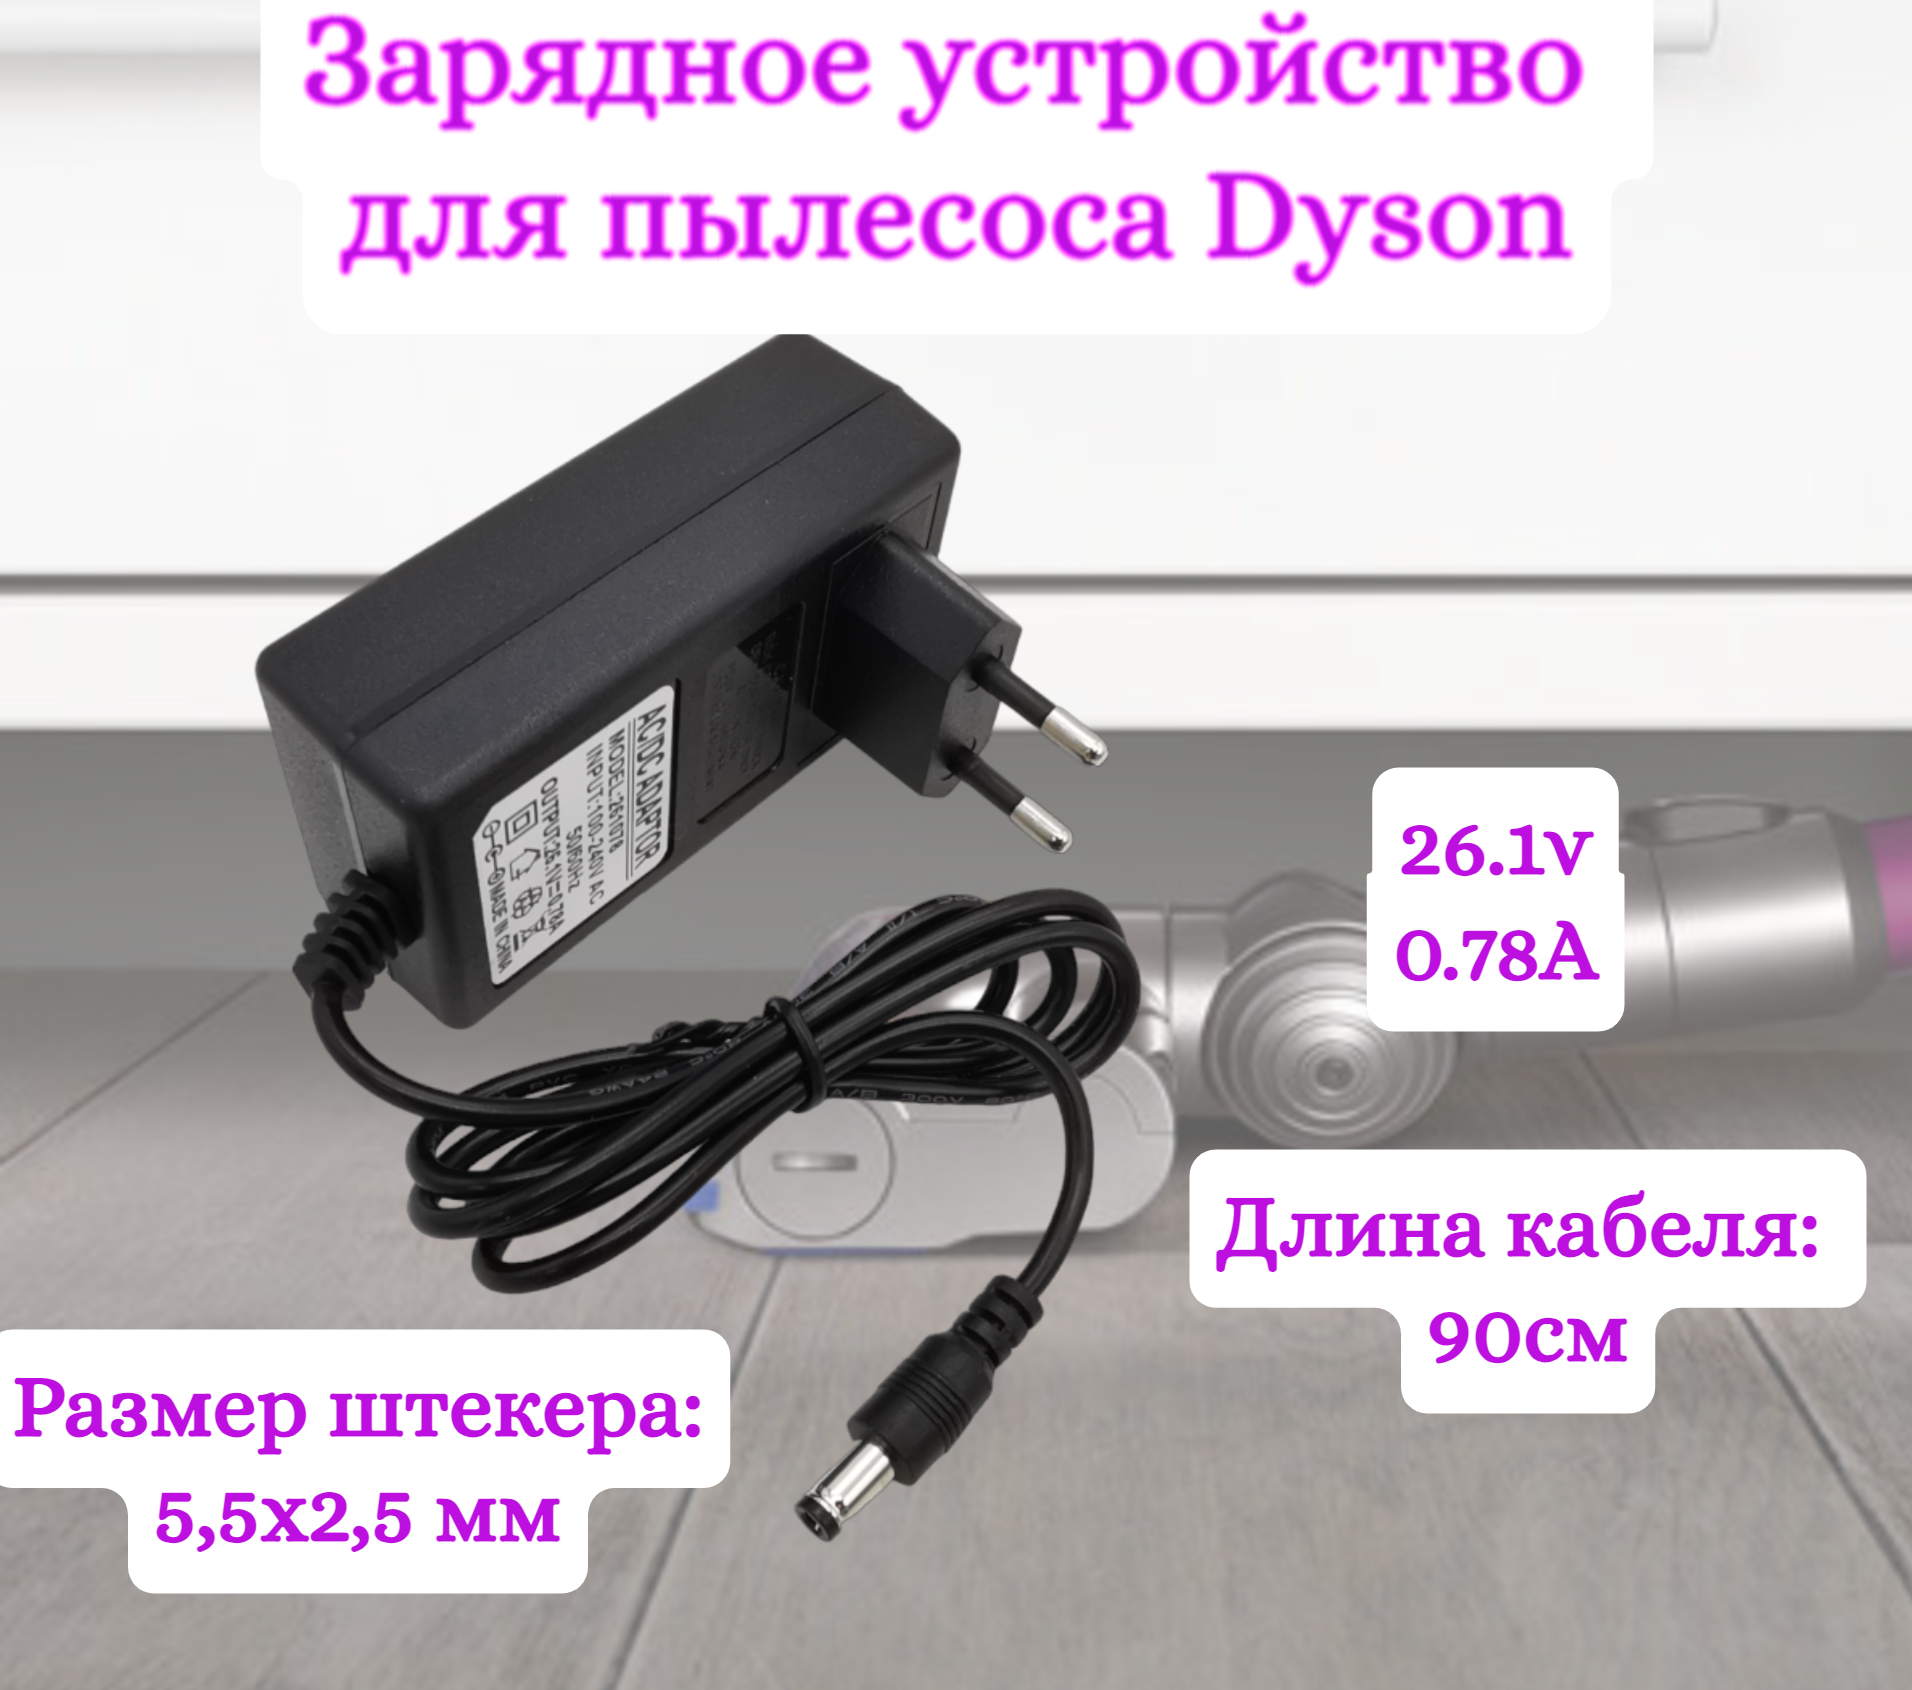 Зарядное устройство для пылесосов Helpico AC-DC 26.1v 0.78A 5.5x2.5mm